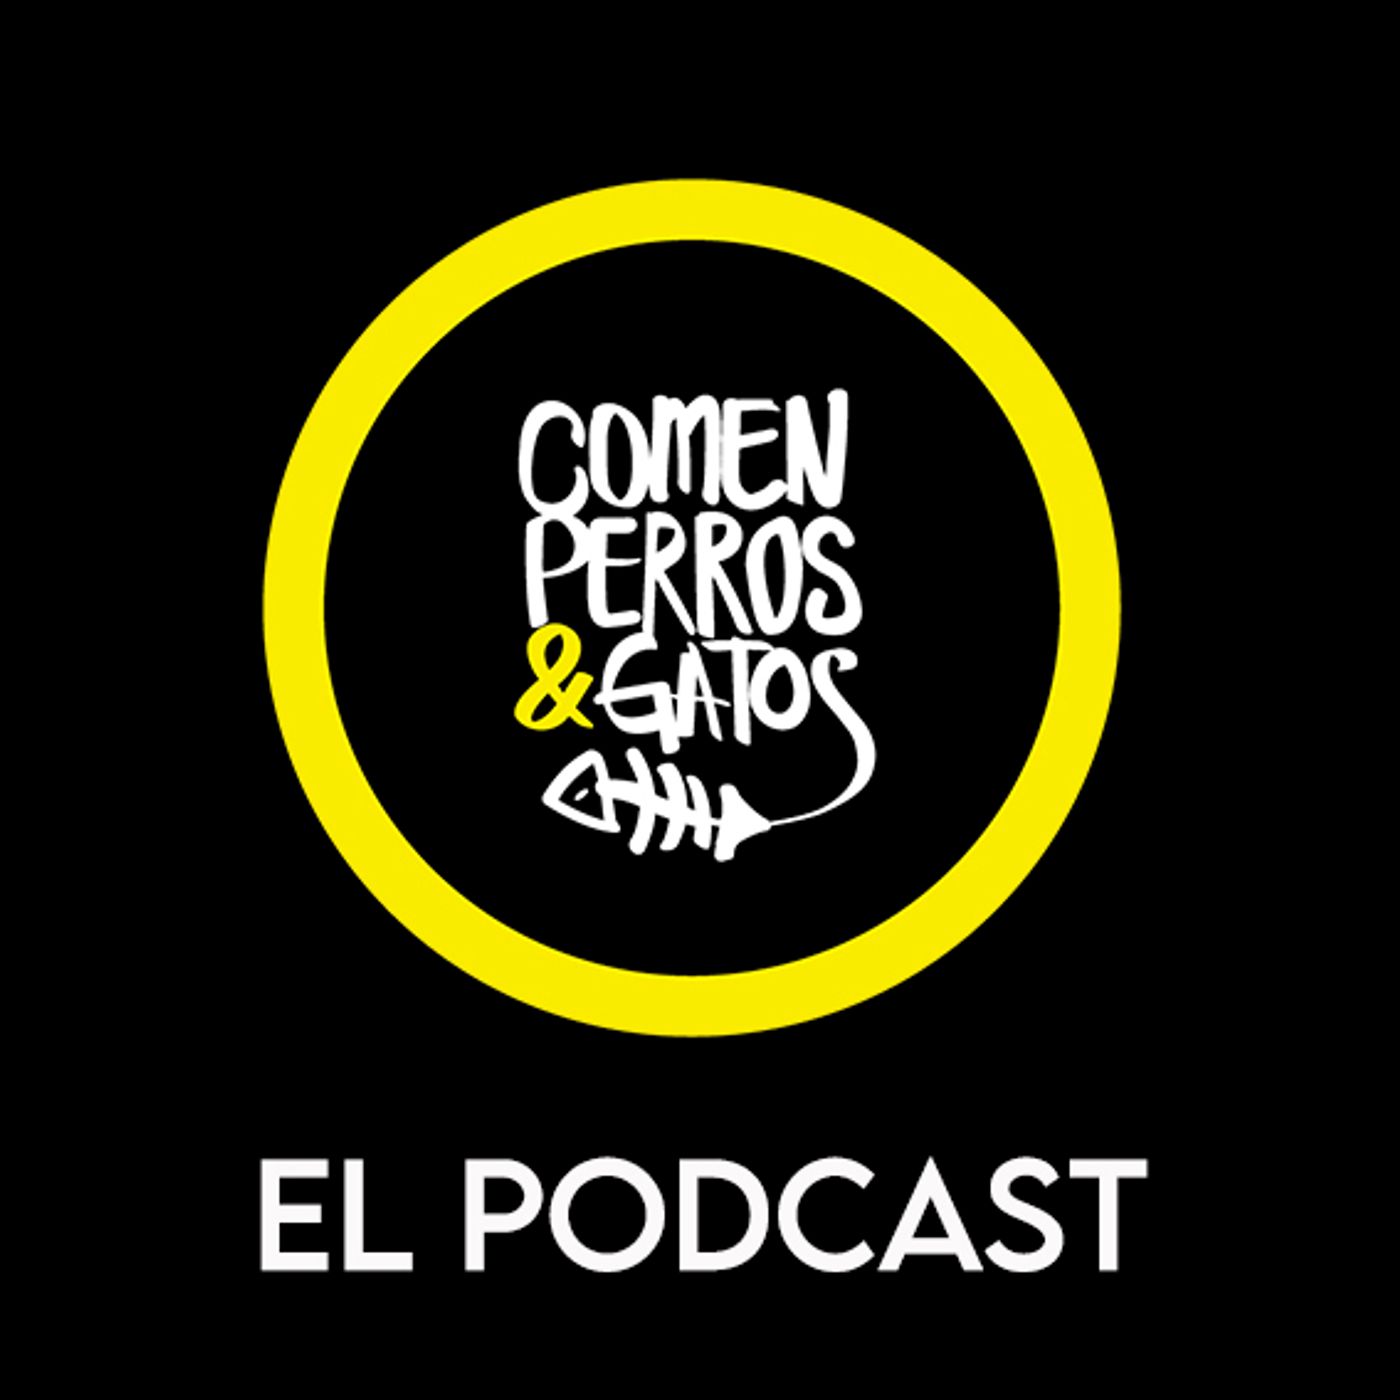 ComenPerros&Gatos El Podcast